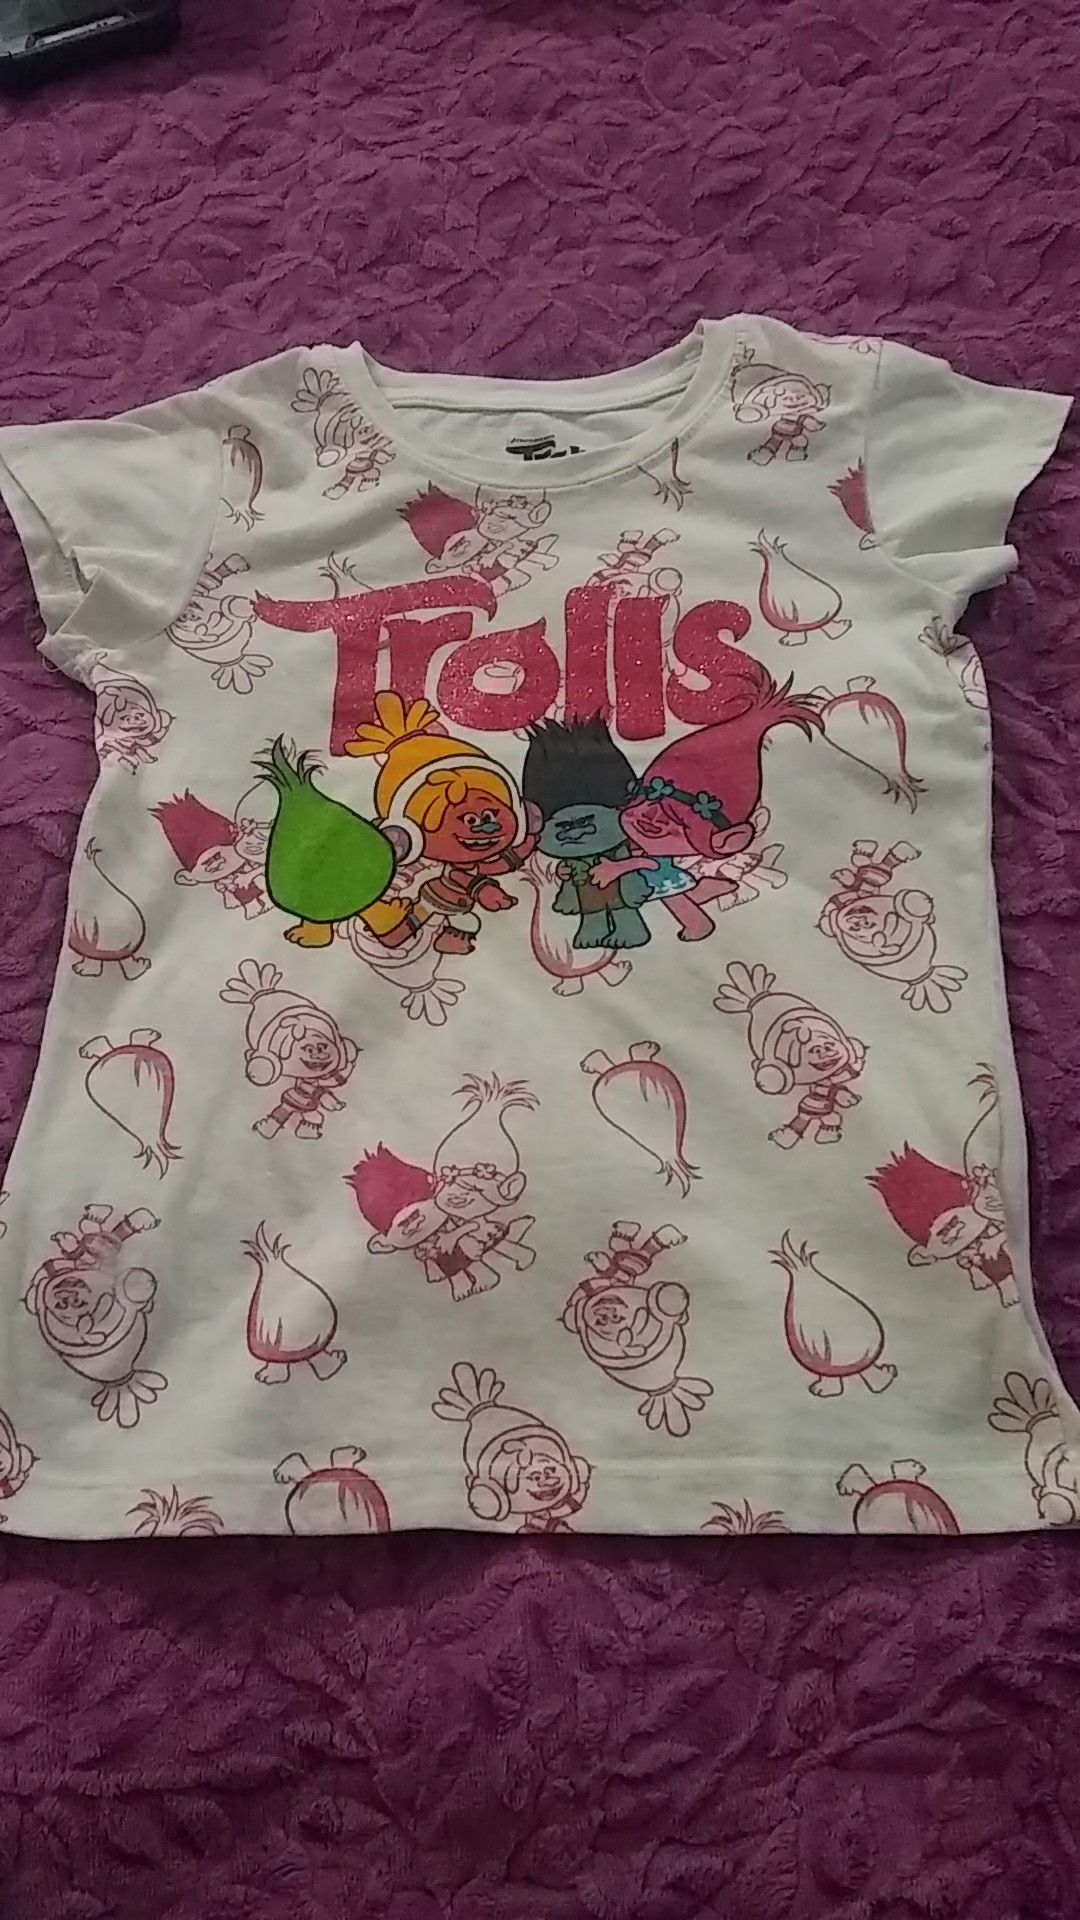 Little girls Trolls shirt size 6X